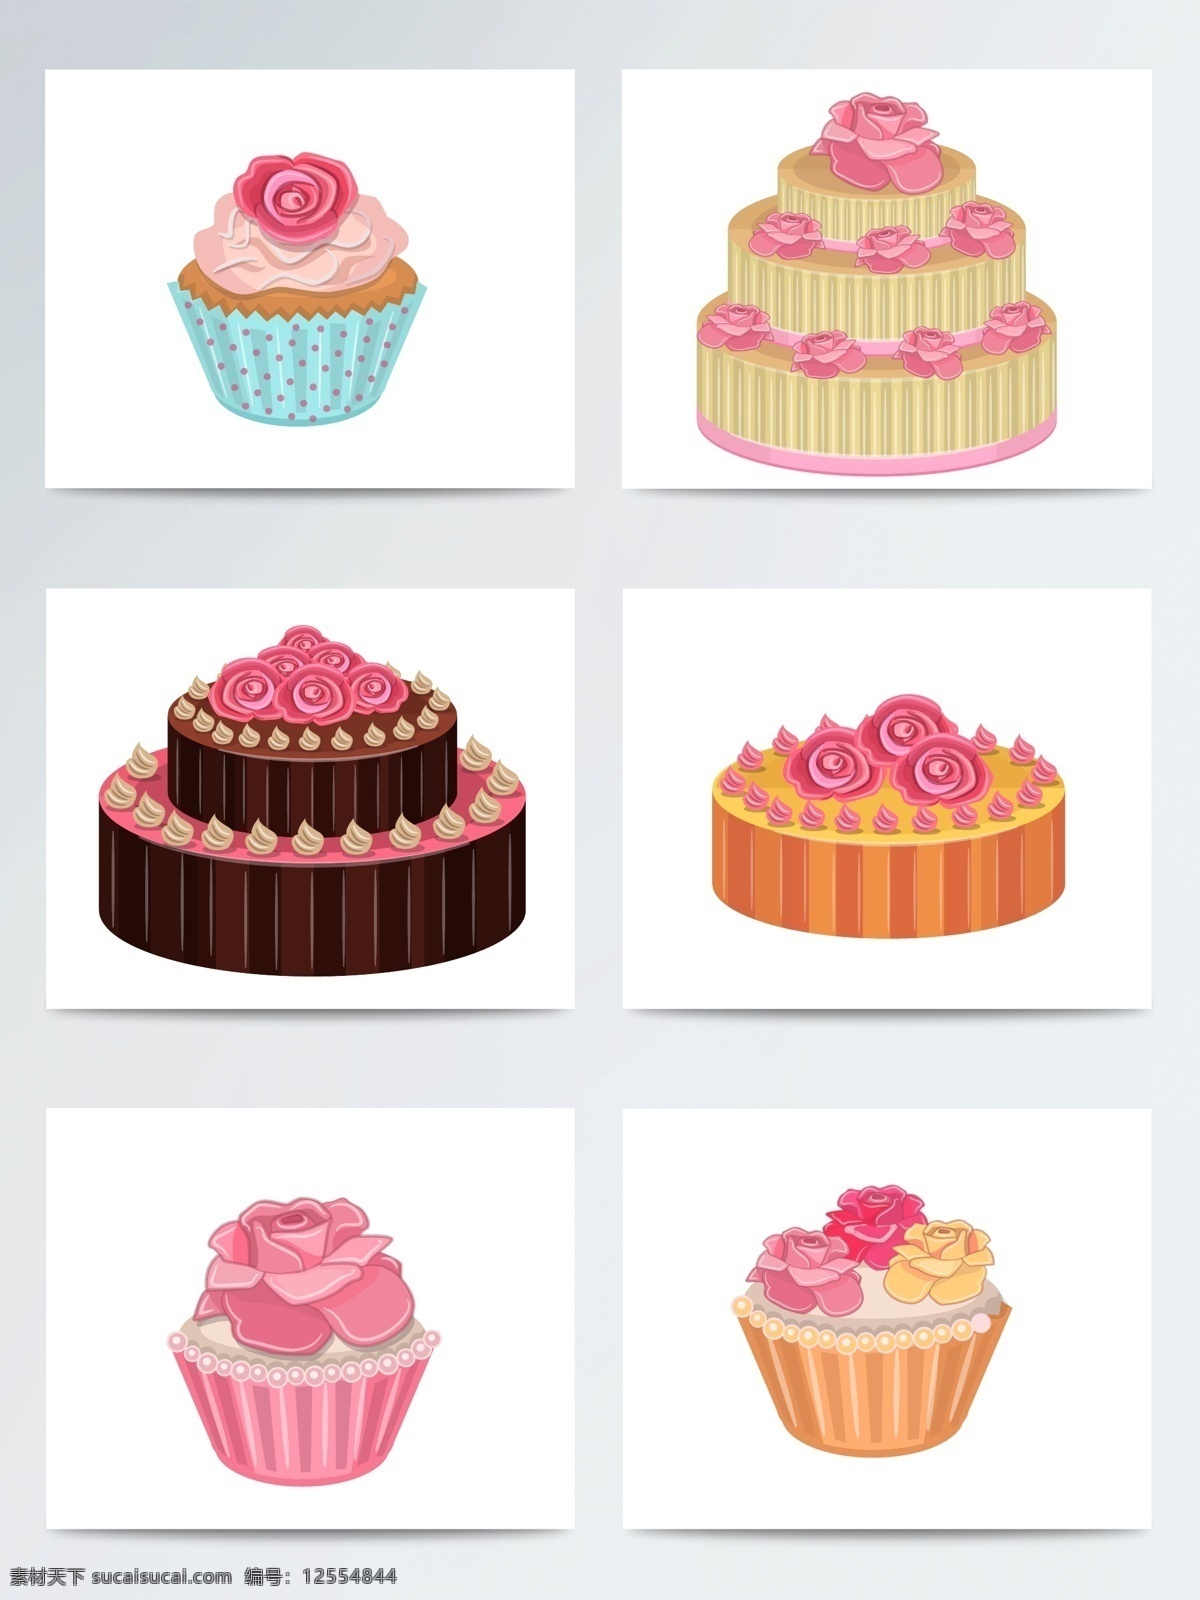 手绘 创意 玫瑰花 蛋糕 矢量素材 甜品 生日蛋糕 手绘蛋糕 ai素材 手绘插画 食物 手绘甜品 甜点 杯子蛋糕 玫瑰